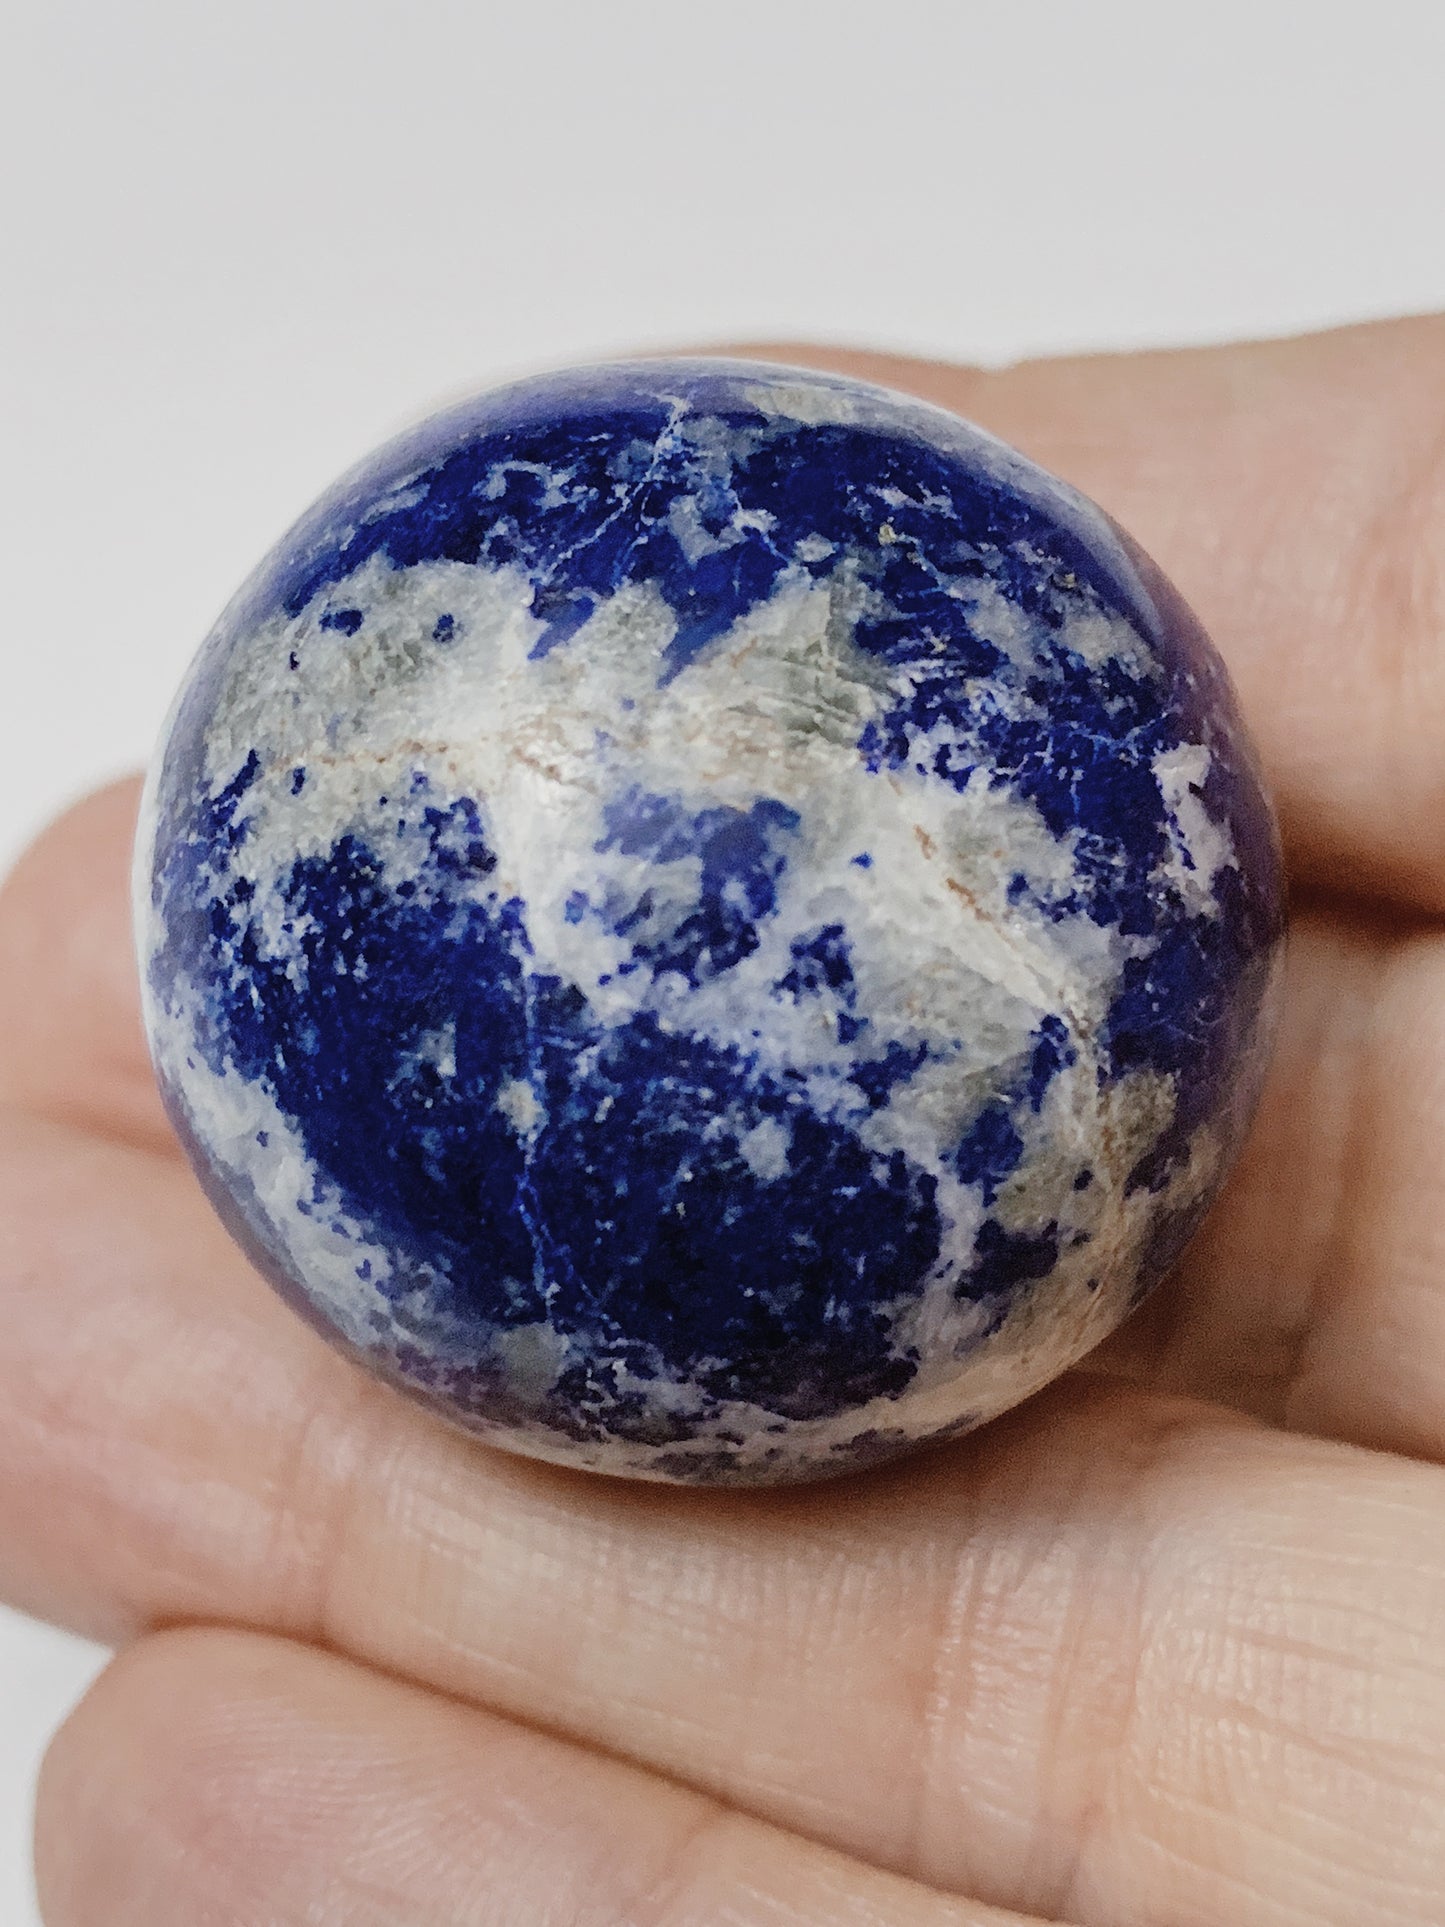 [Crystal] Lapis Lazuli Balls Grade AAA+ | Afghanistan